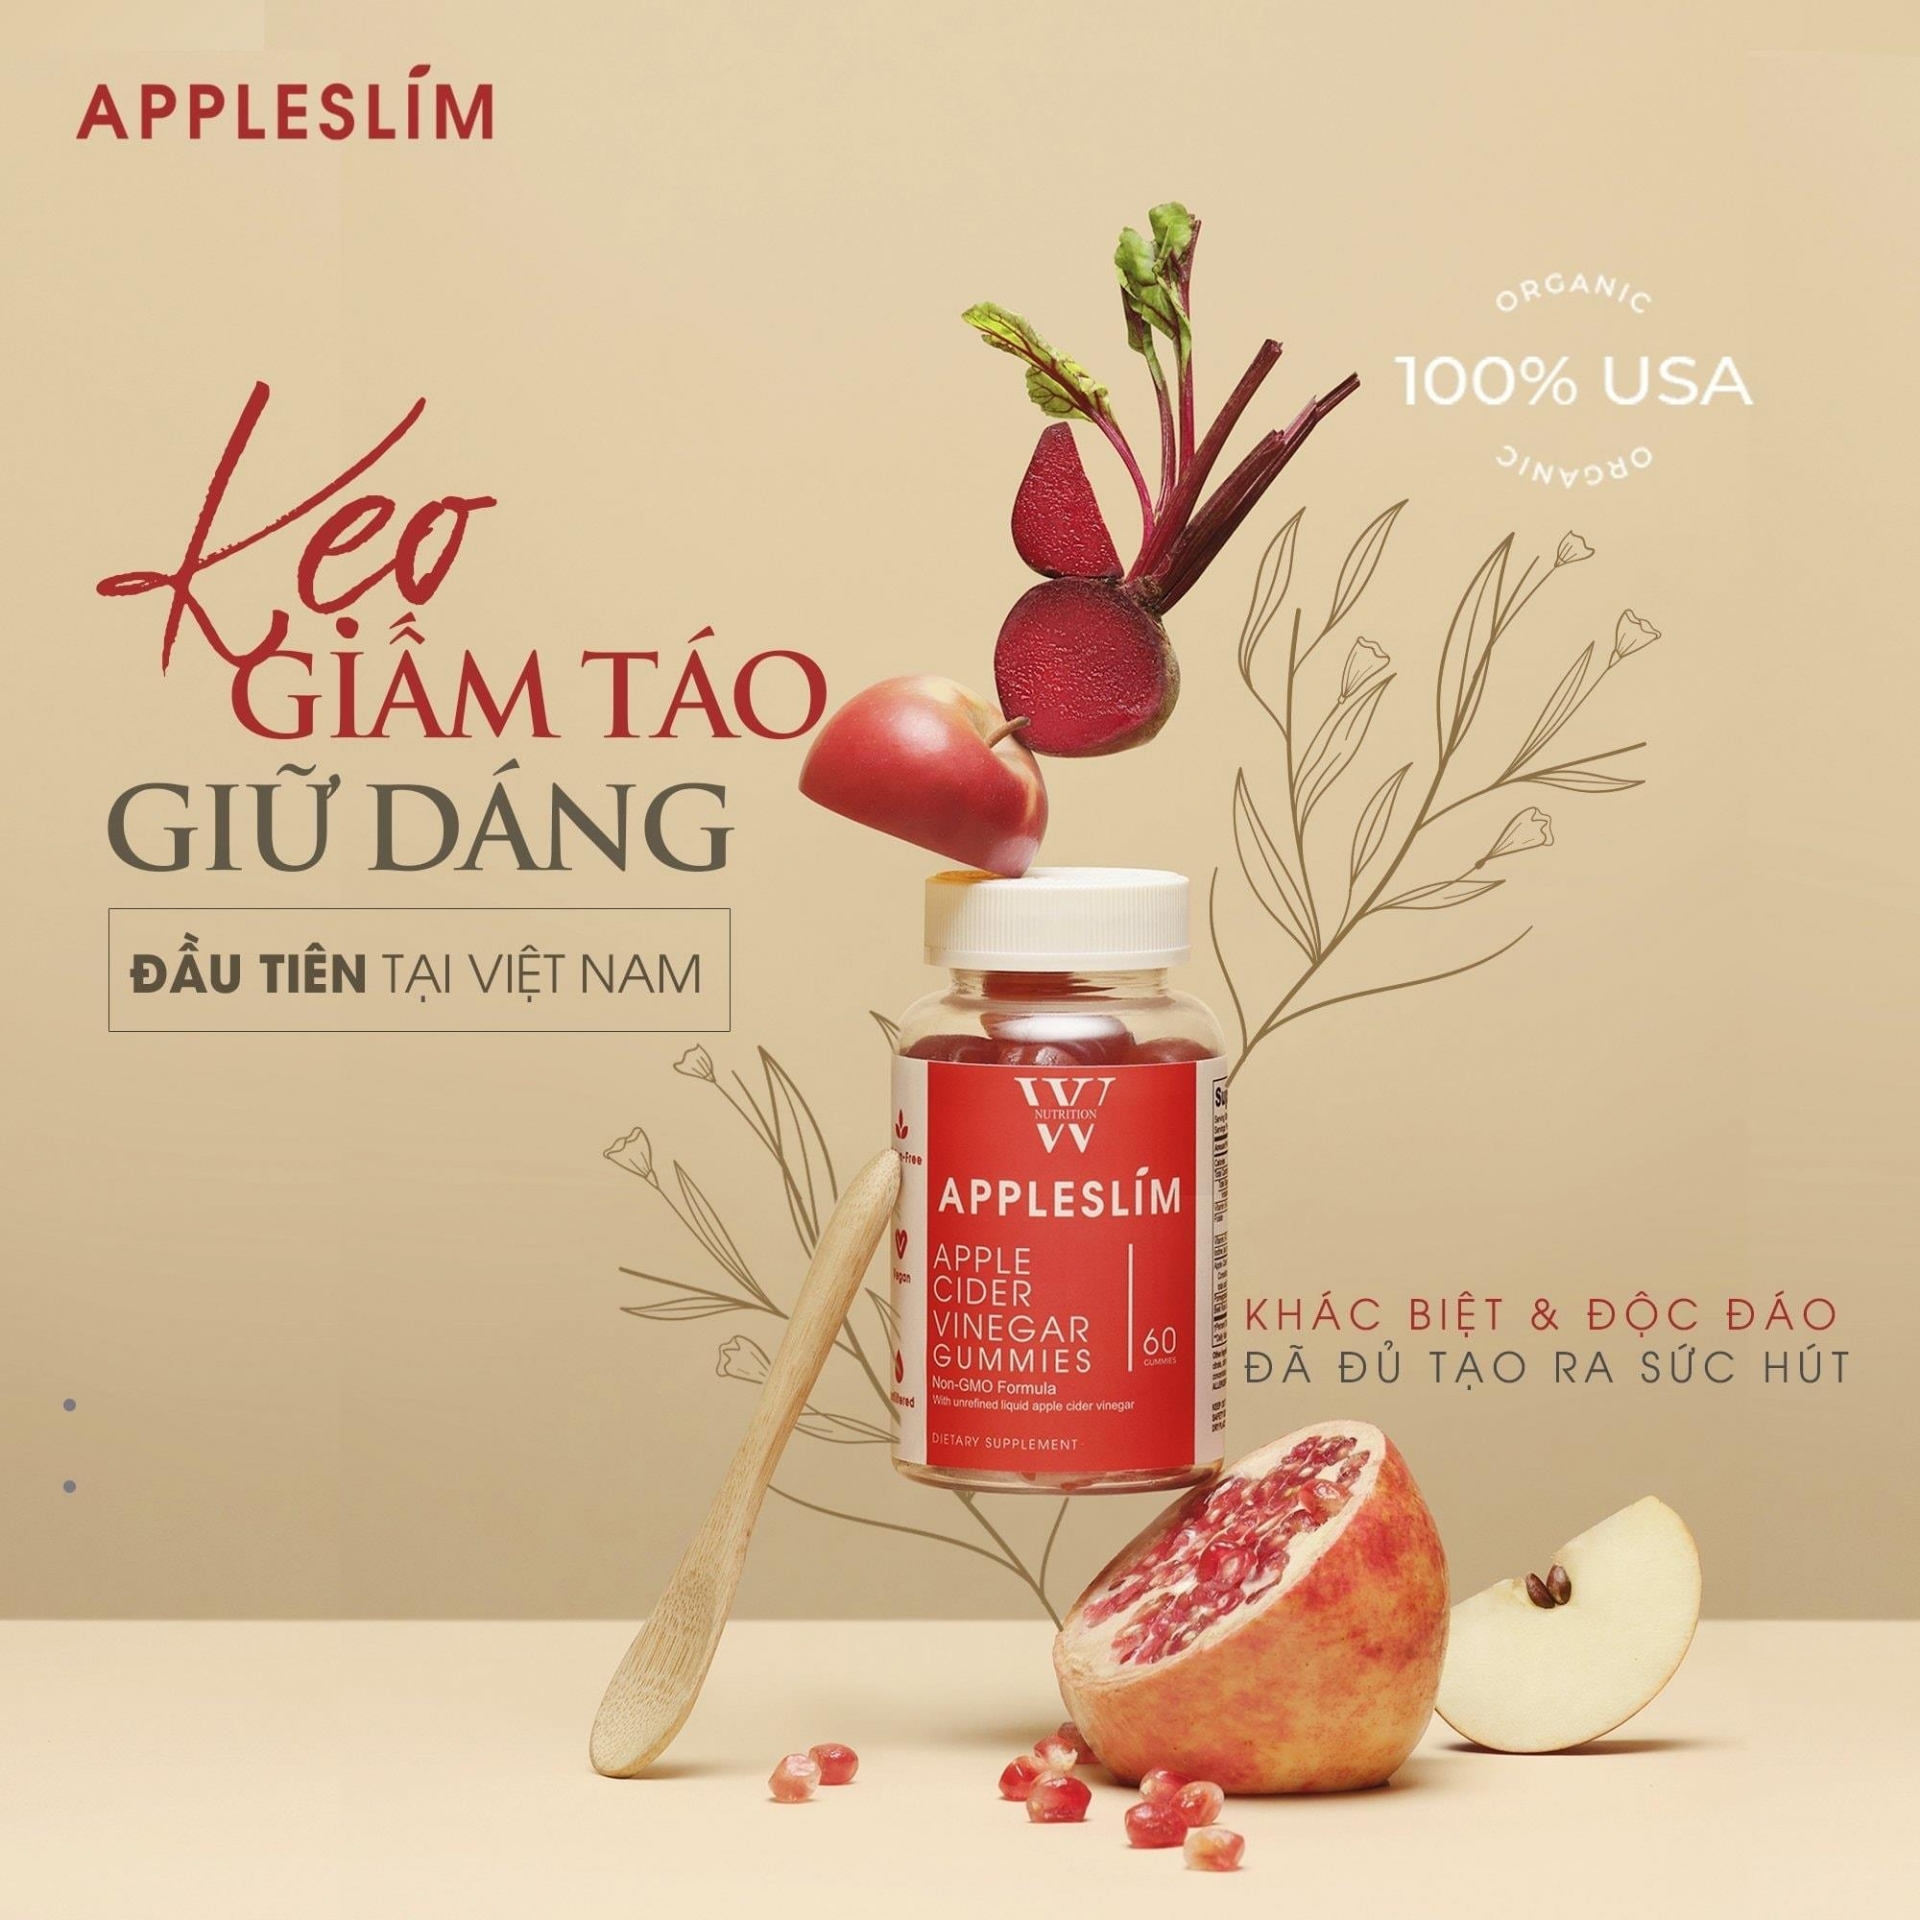 Đây là loại kẹo dẻo giấm táo đầu tiên có mặt trên thị trường Việt Nam.